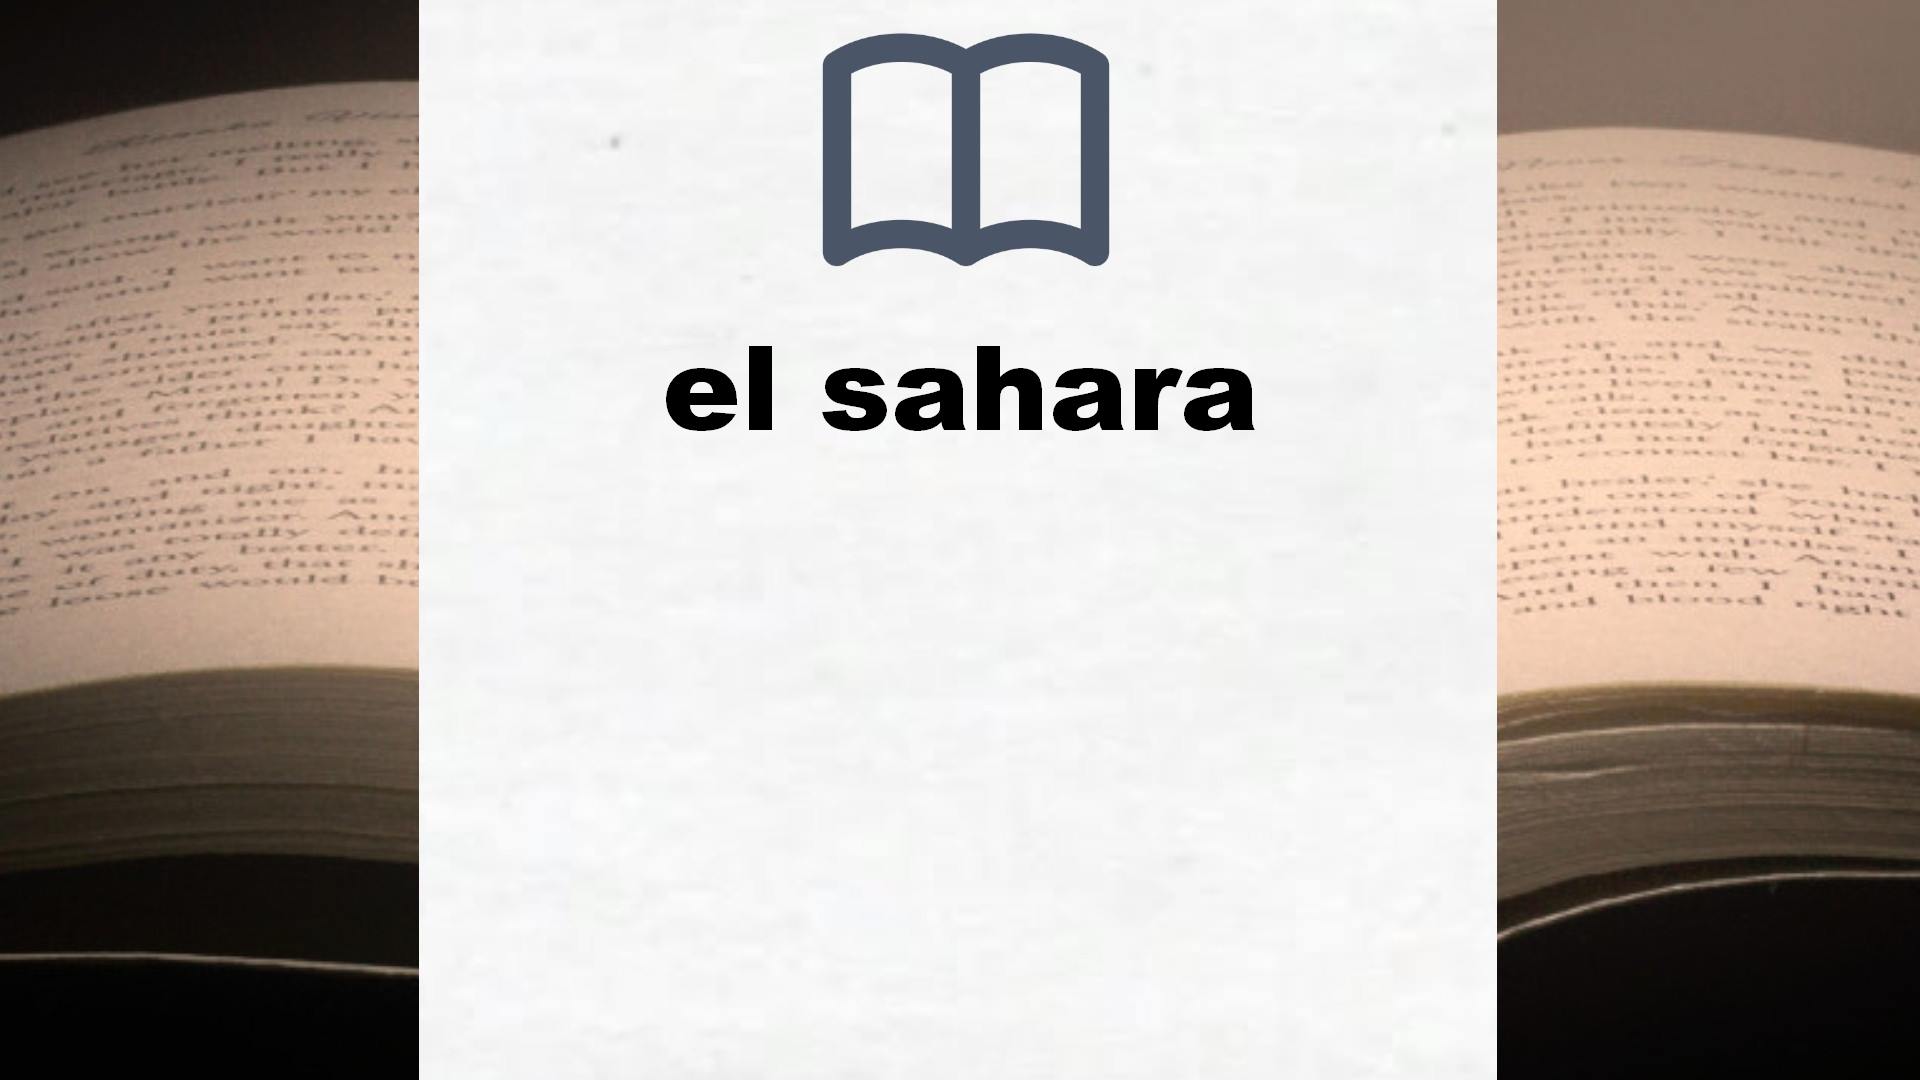 Libros sobre el sahara